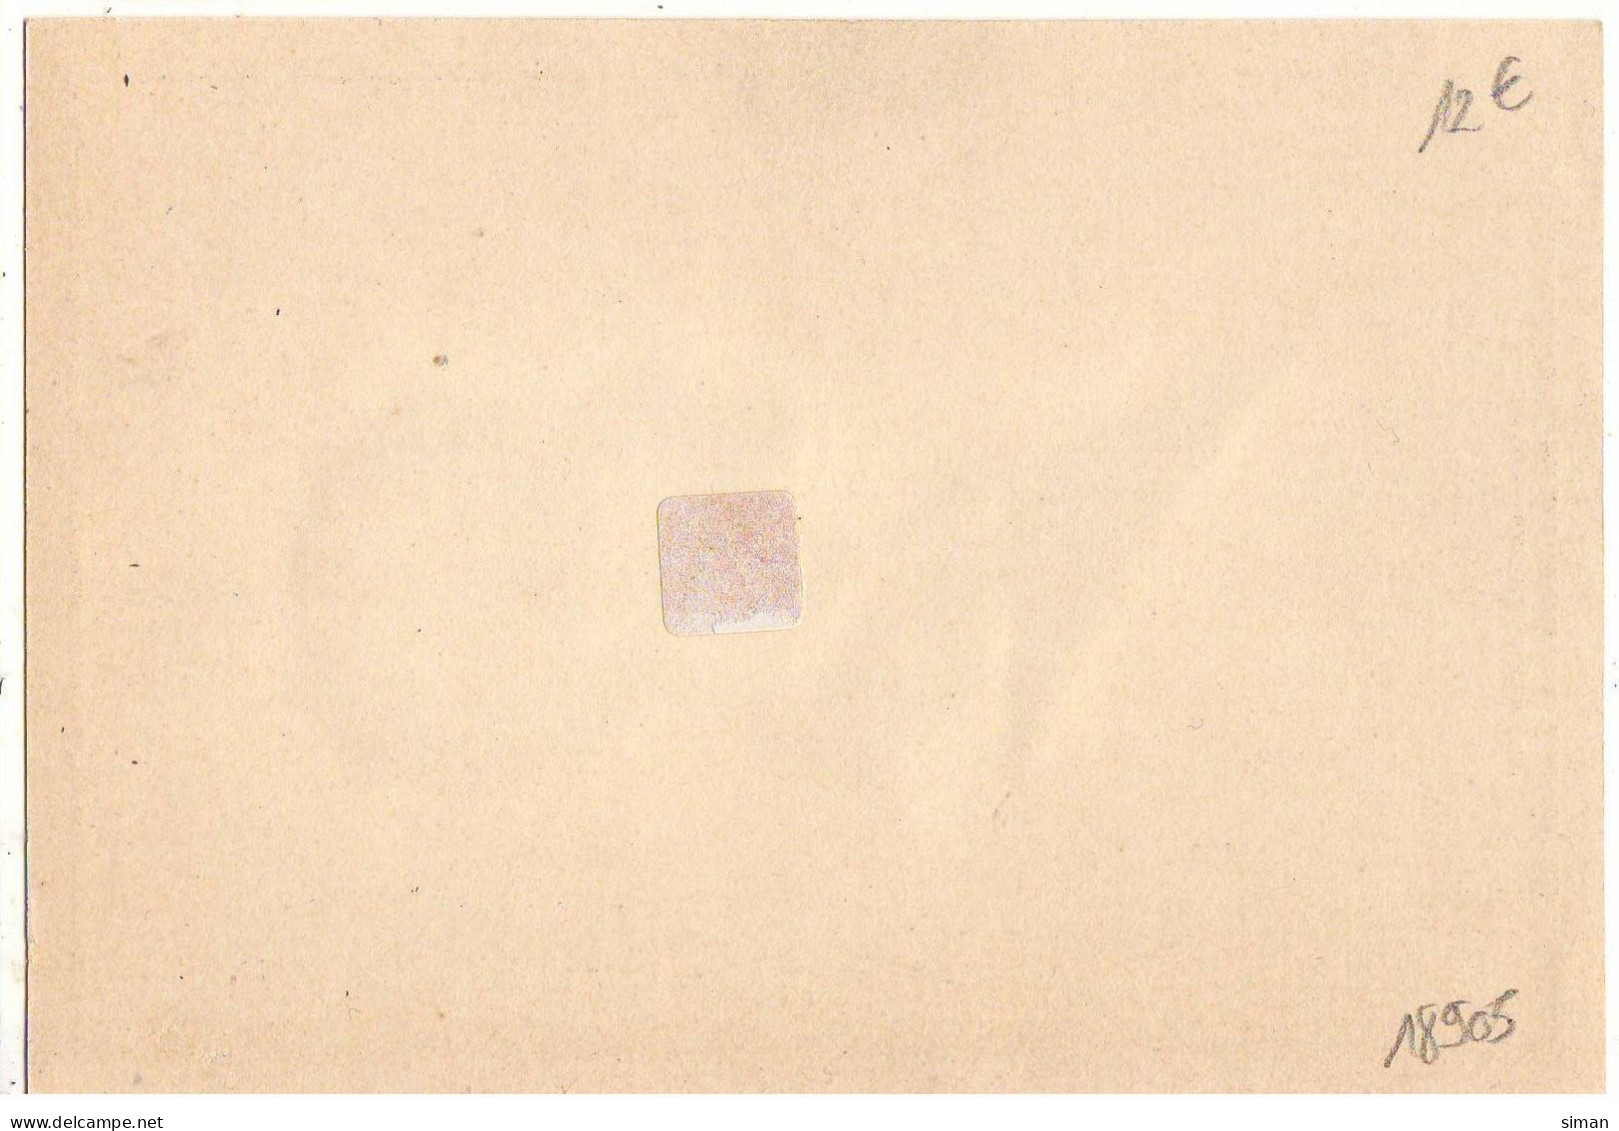 N°18905 - Silhouettes - P. Kârolyi Silhouette - Souvenir De L'Exposition Universelle De Bruxelles 1935 - Silhouettes